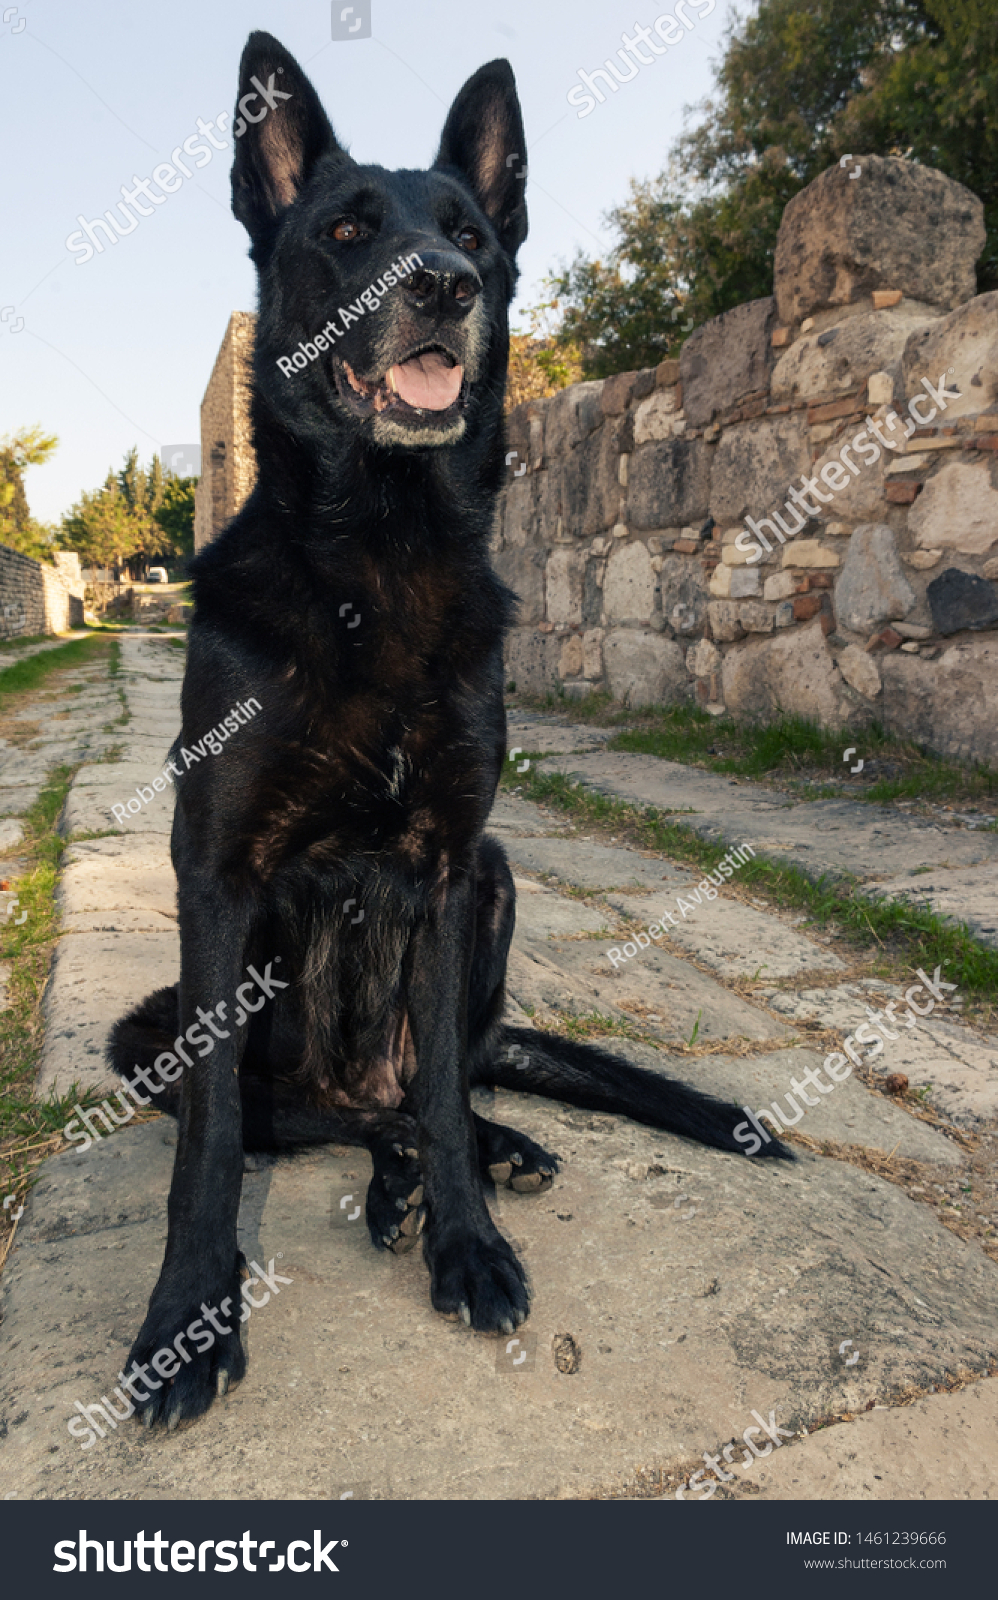 Black Female Belgian Malinois Dog Sitting Animals Wildlife Stock Image 1461239666